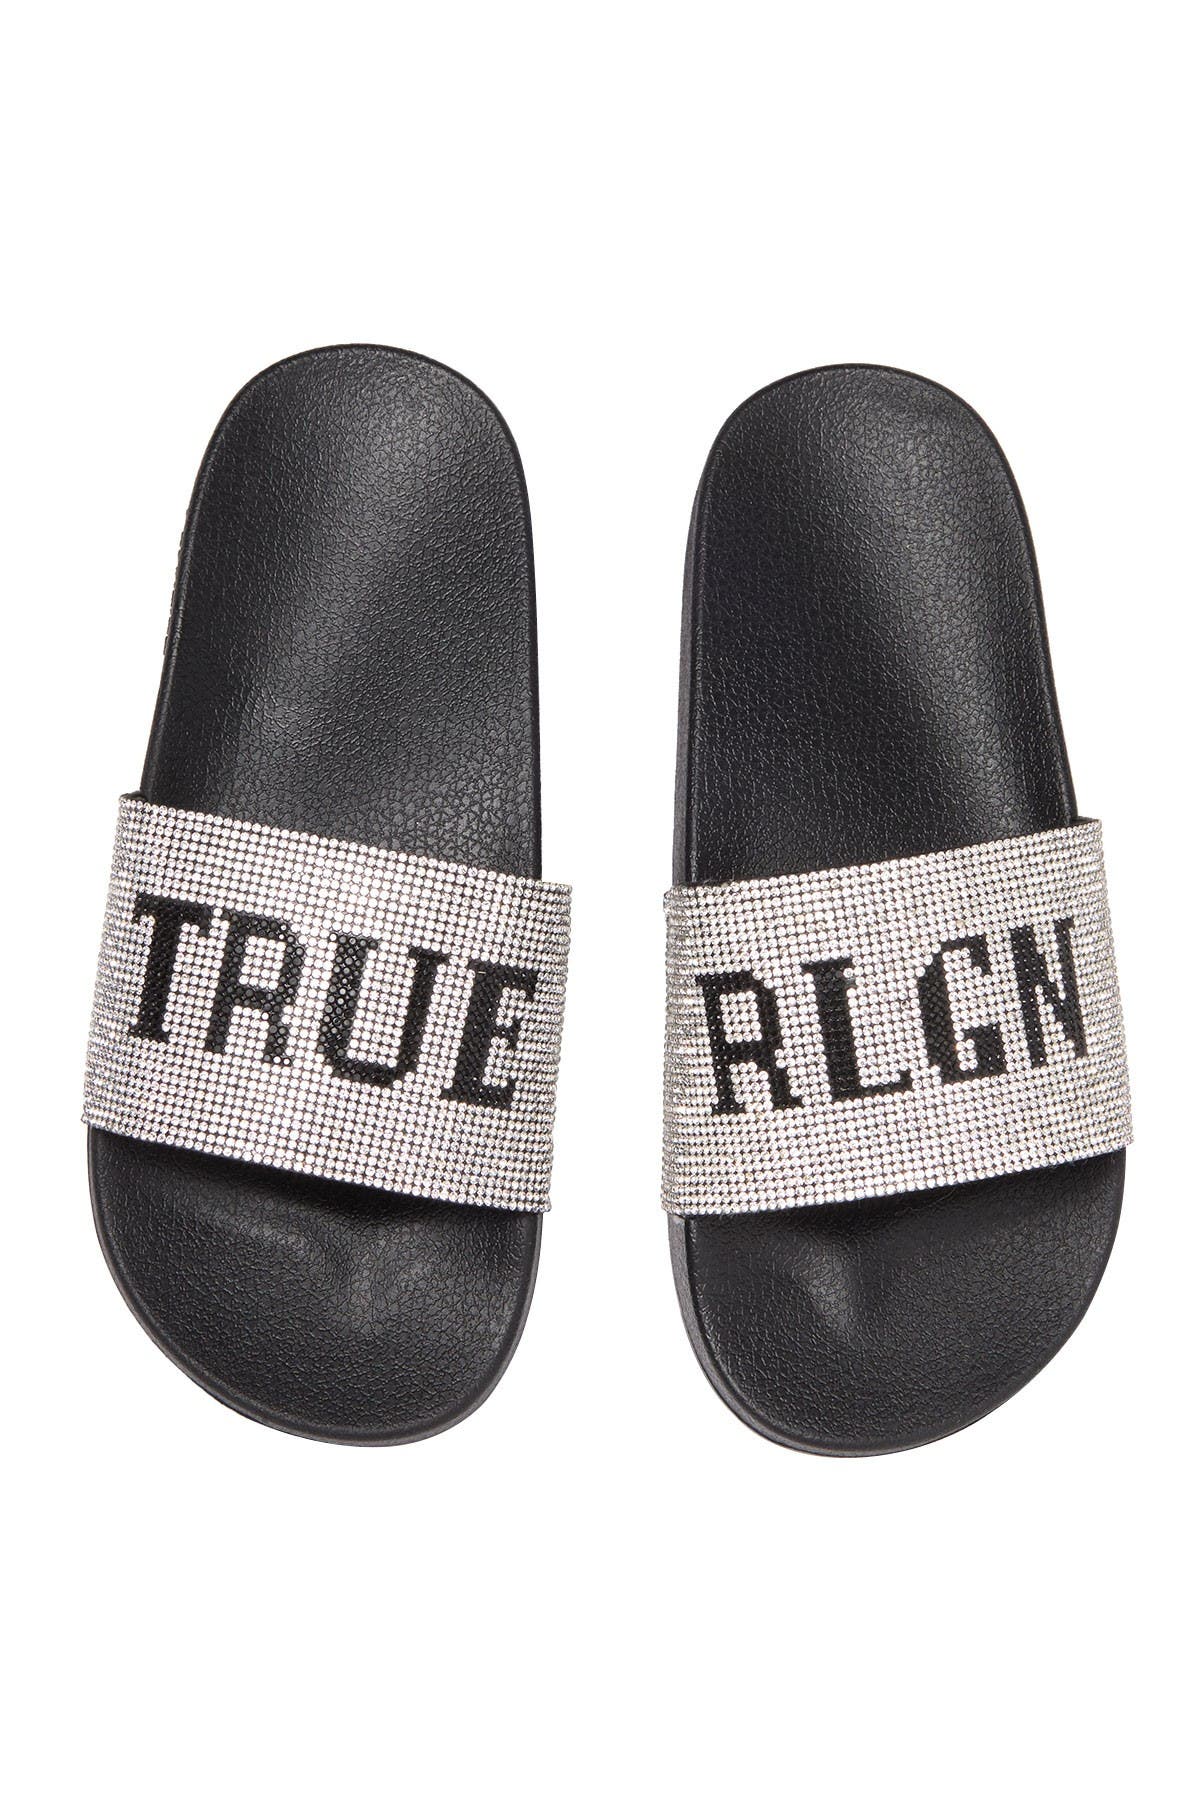 true religion flip flops mens